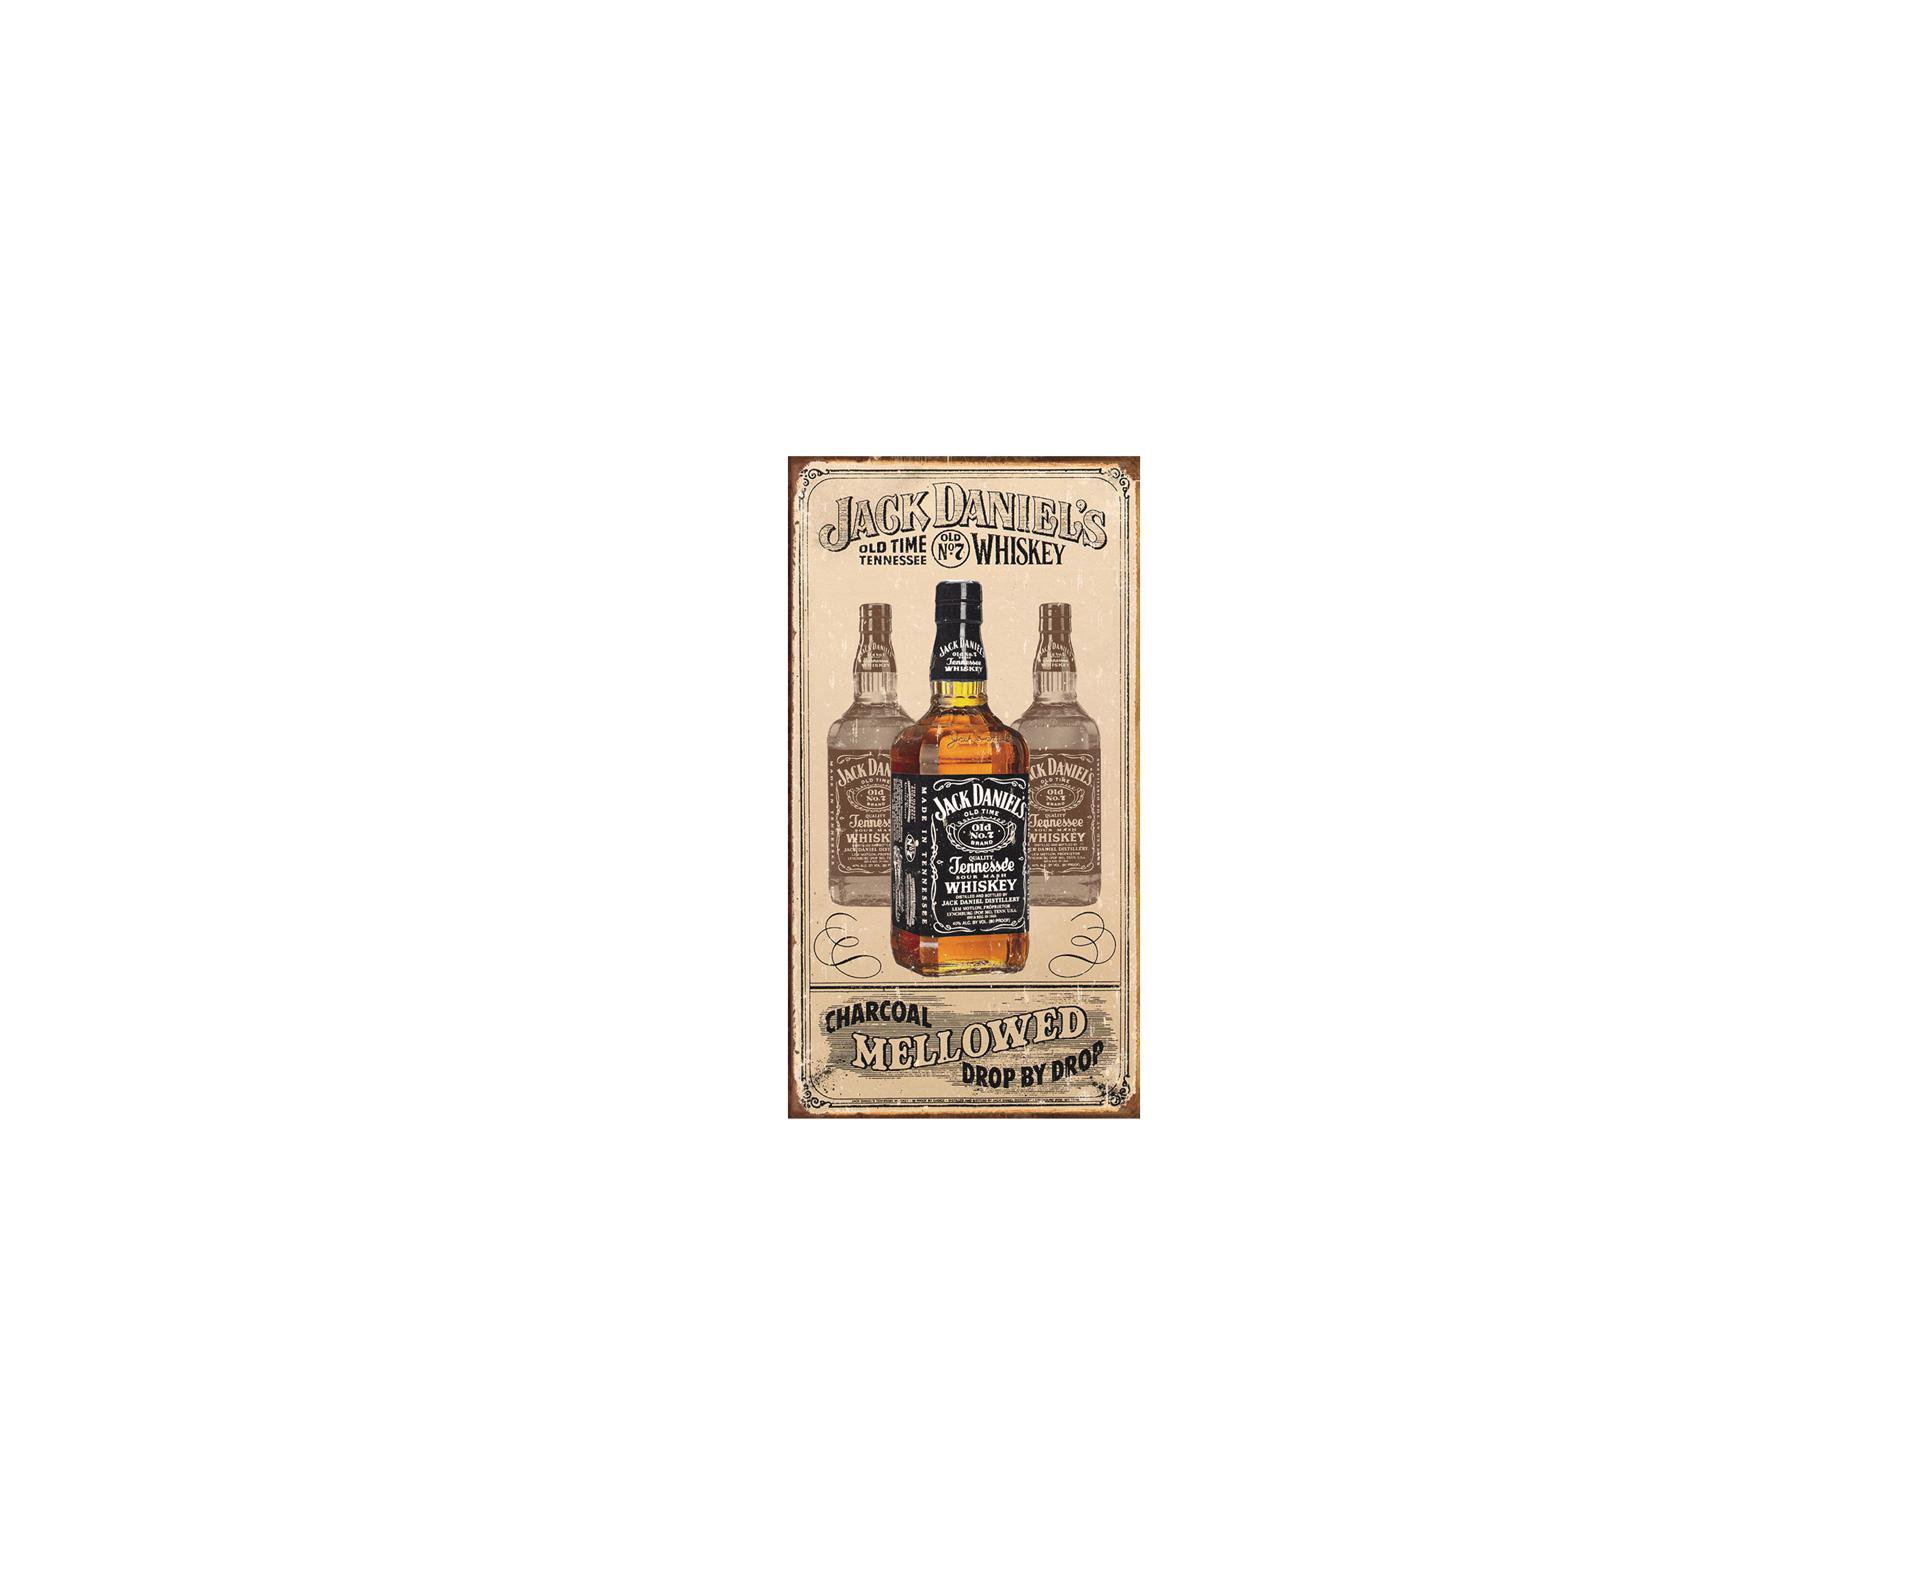 Placa Metálica Decorativa Jack Daniels Mellowed - Rossi